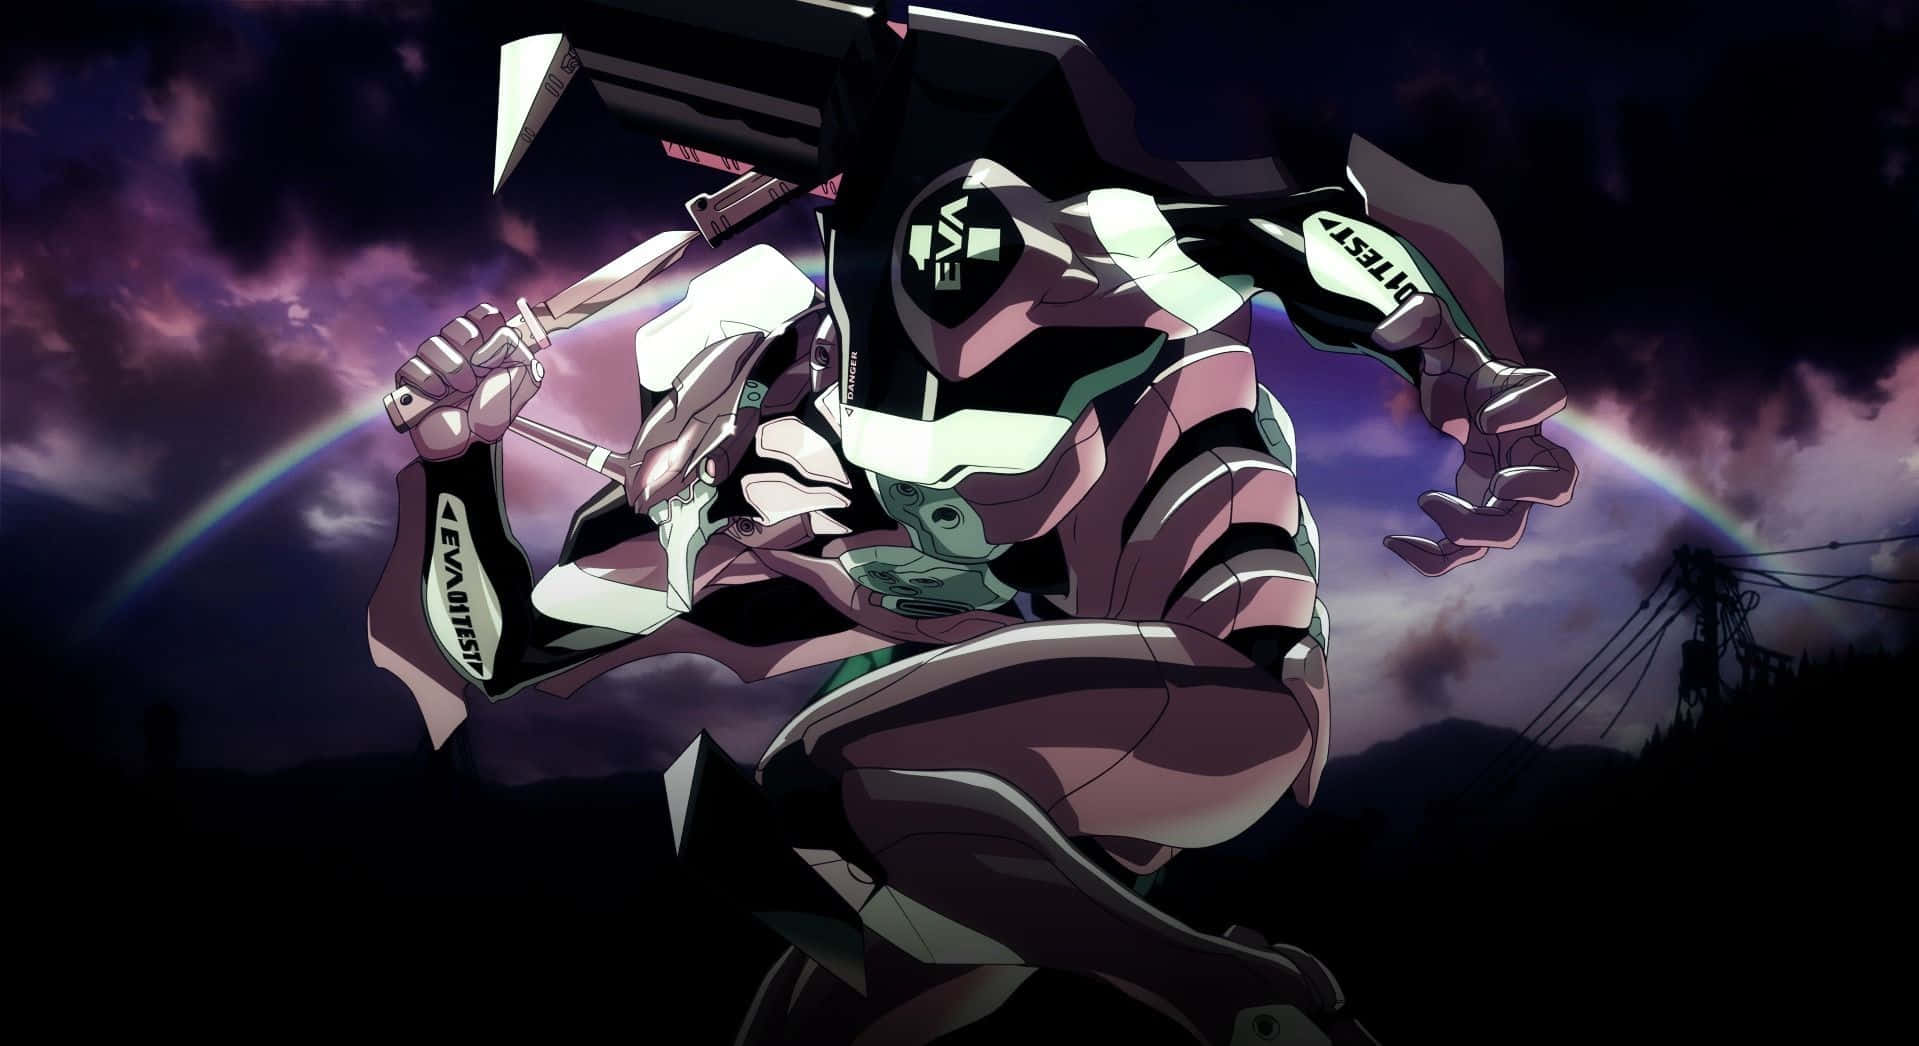 Shinjiikari Står Forbløffet Over De Mekaniske Væsener I Neon Genesis Evangelion.